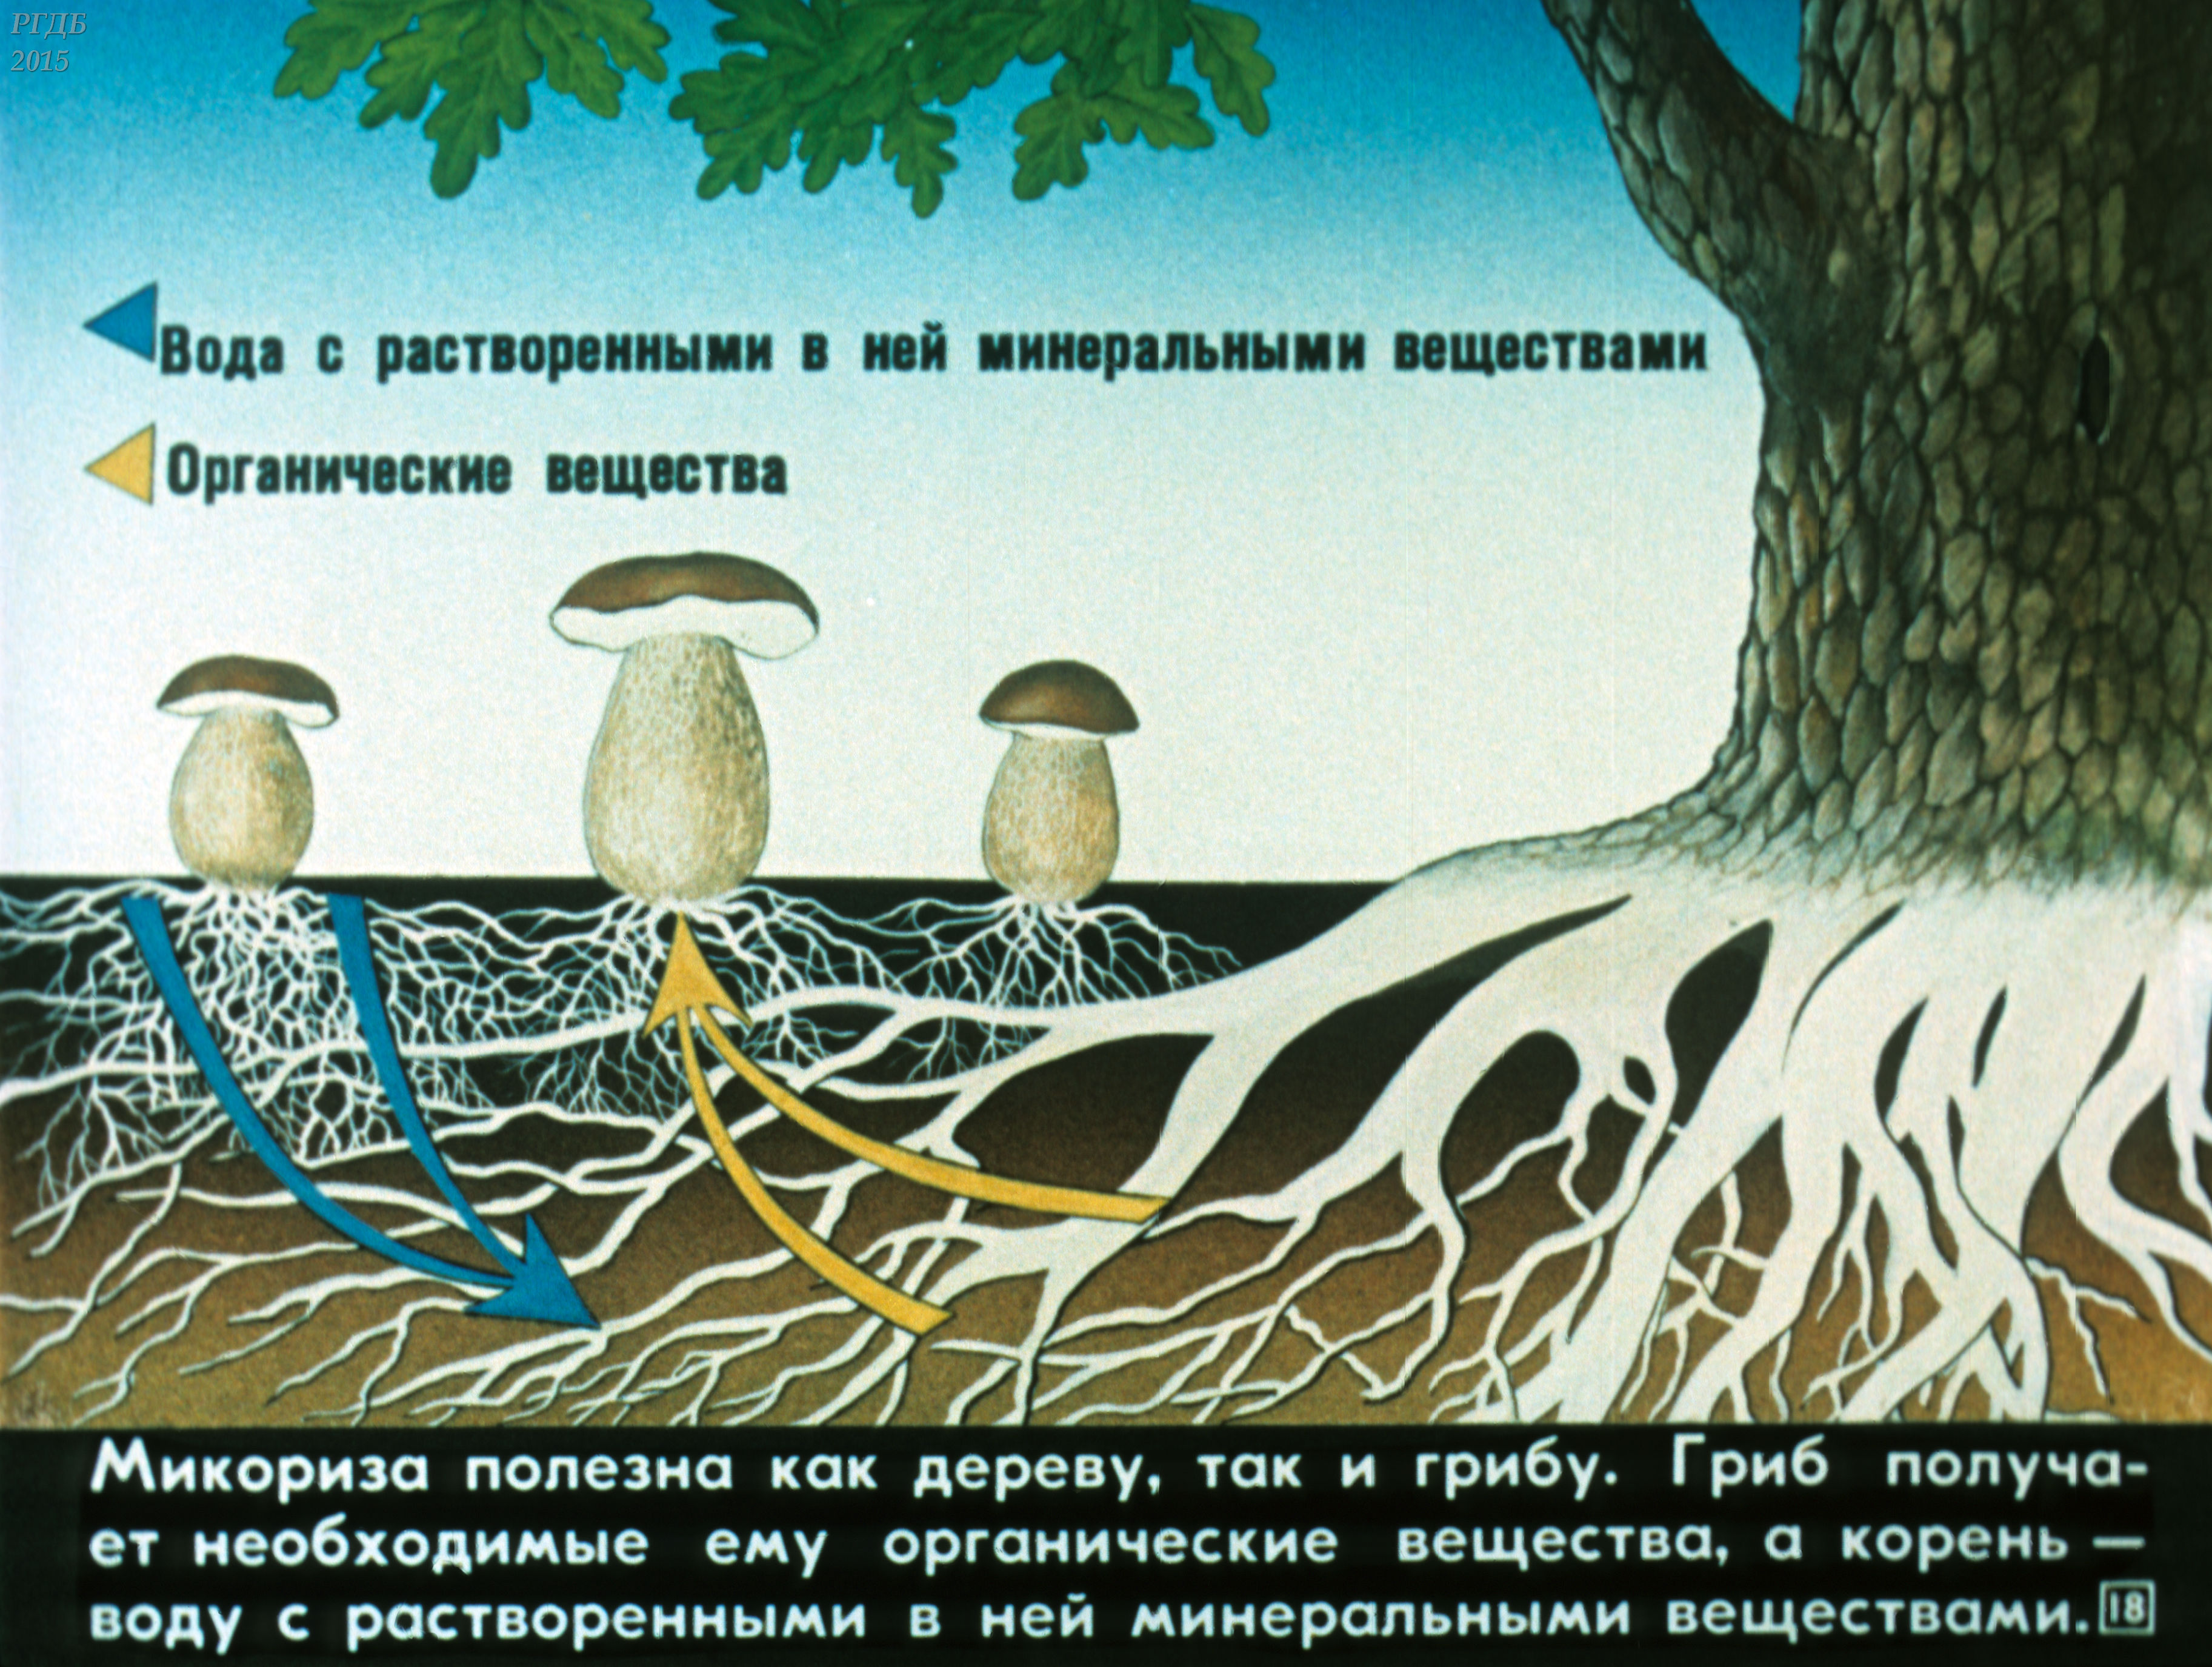 Корневой гриб. Схема симбиоза гриба и дерева. Микориза с грибами-симбионтами. Взаимосвязь грибов и деревьев. Симбиоз гриба и растения.